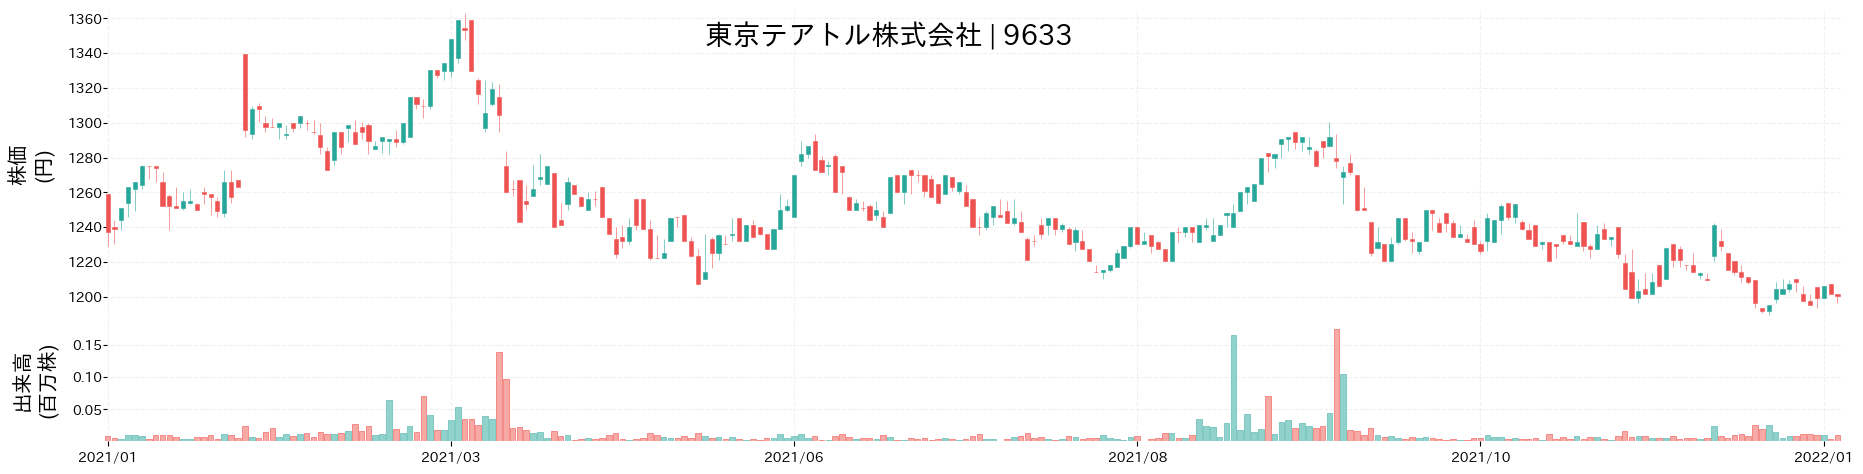 東京テアトルの株価推移(2021)